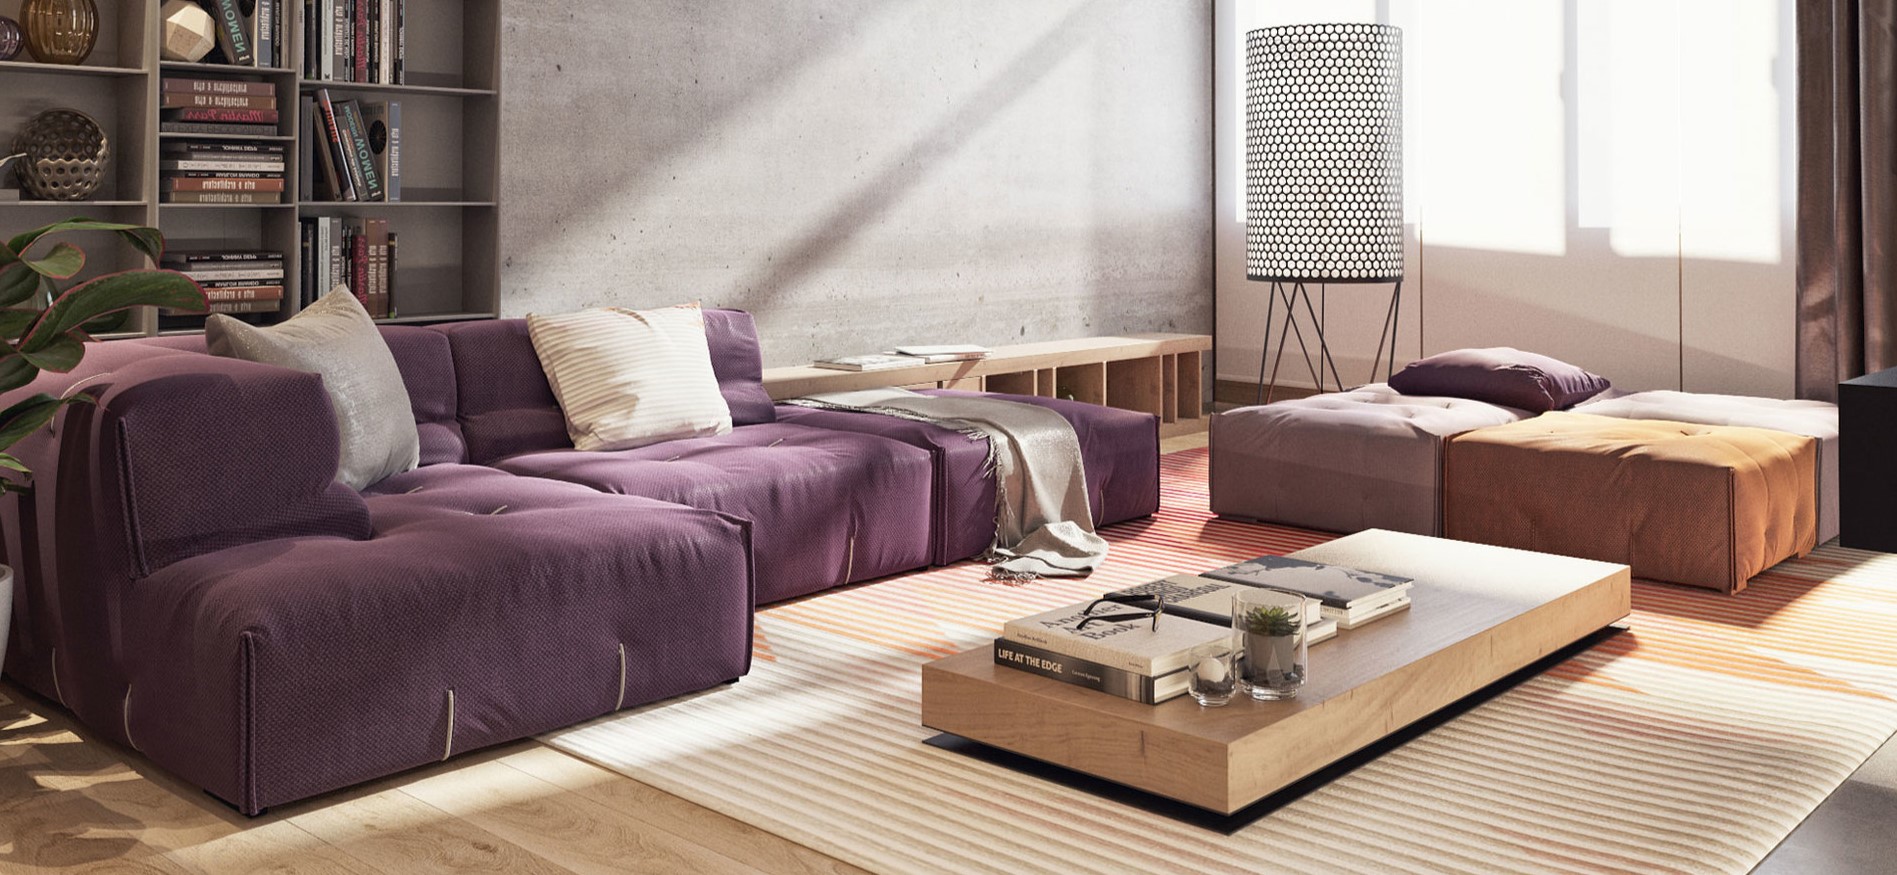 Фиолетовый диван можно дополнить бежевыми подушками и пледом